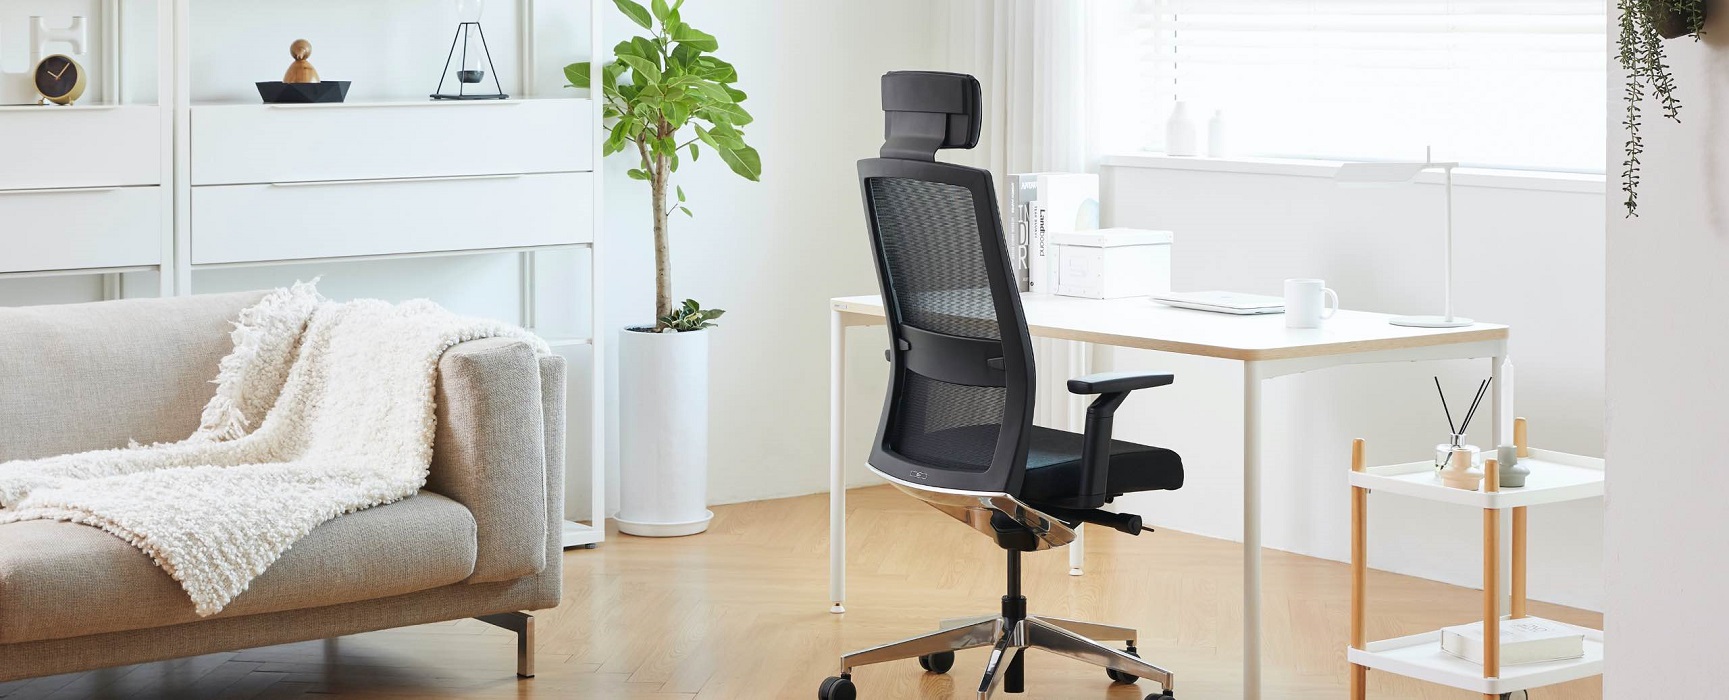 Duorest - инновационные решения для комфортного сидения